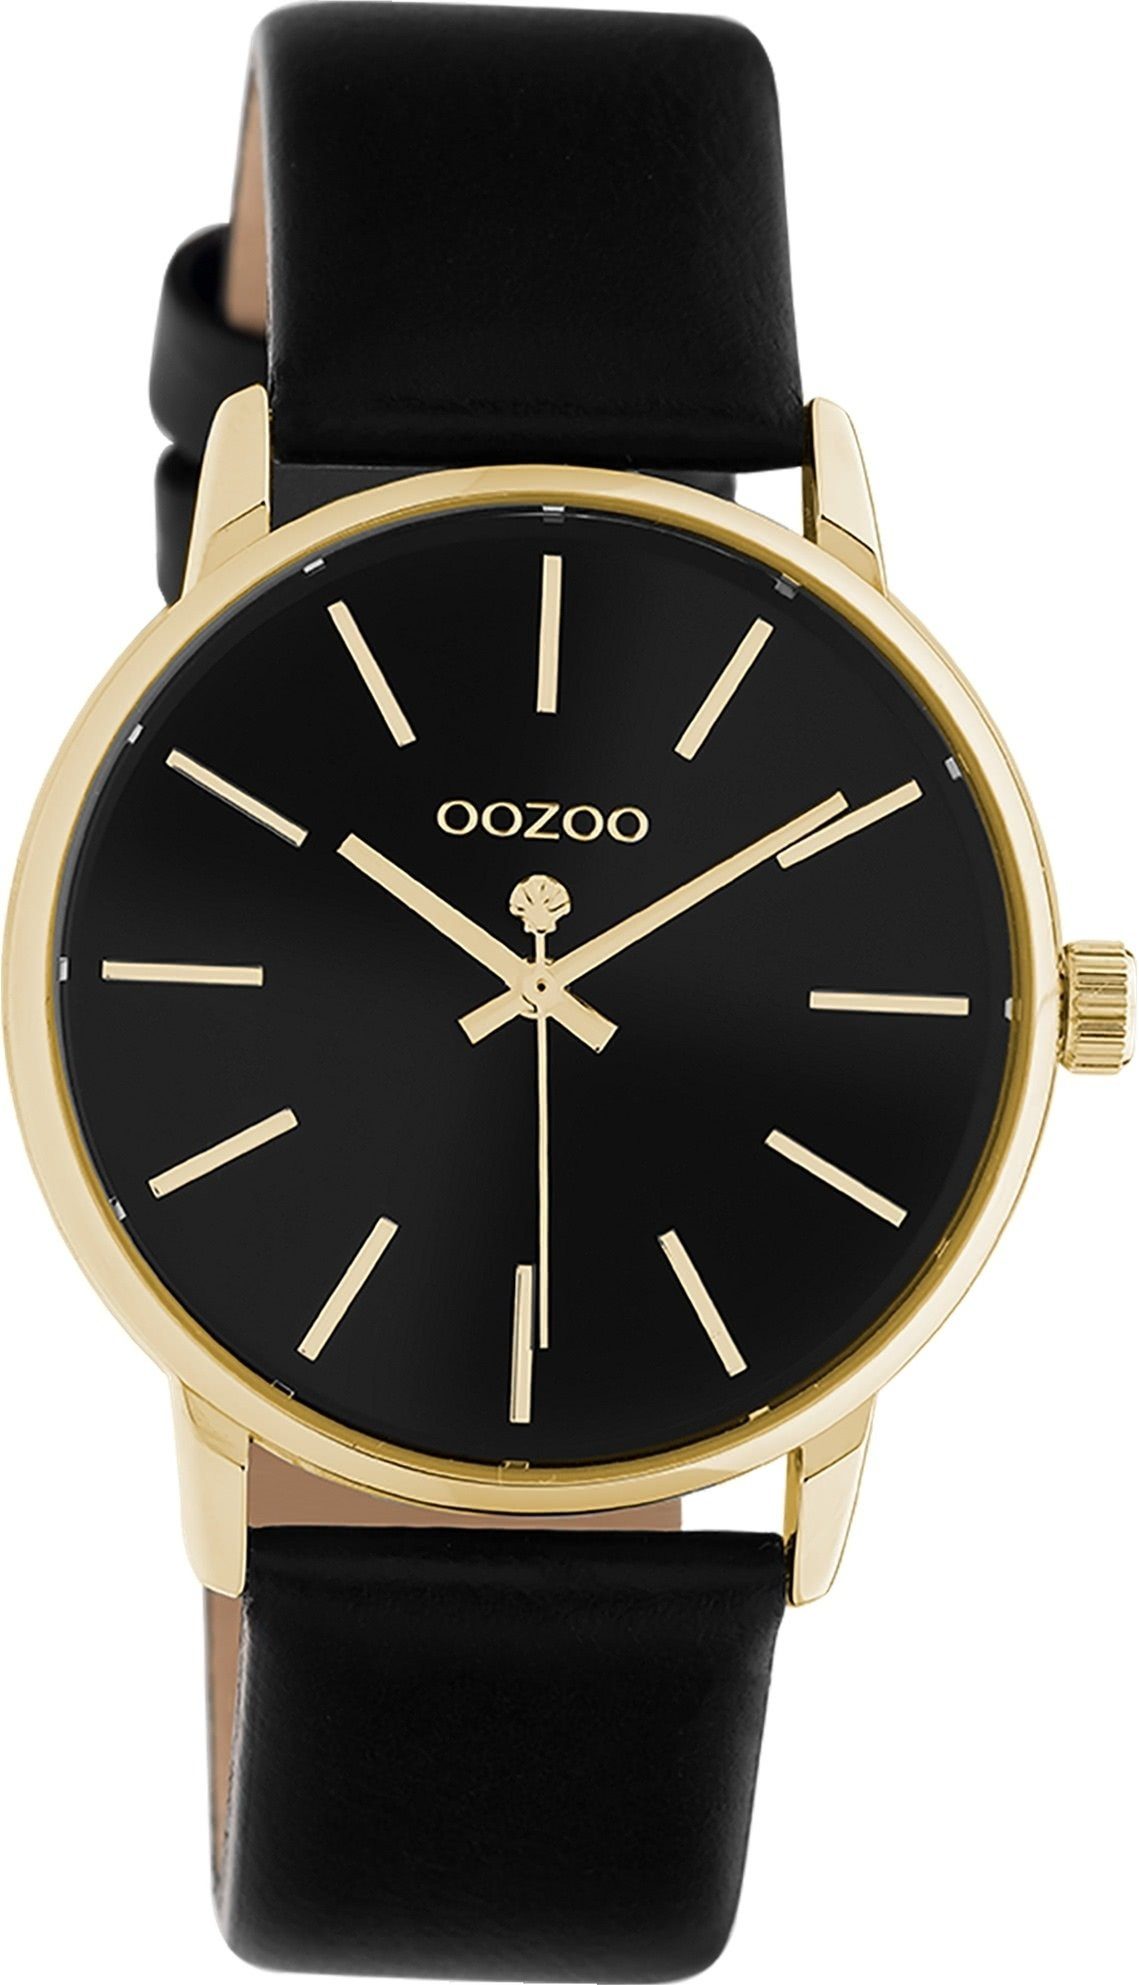 OOZOO Quarzuhr Oozoo Damen Armbanduhr OOZOO Timepieces, Damenuhr rund, mittel (ca. 36mm), Lederarmband schwarz, Fashion